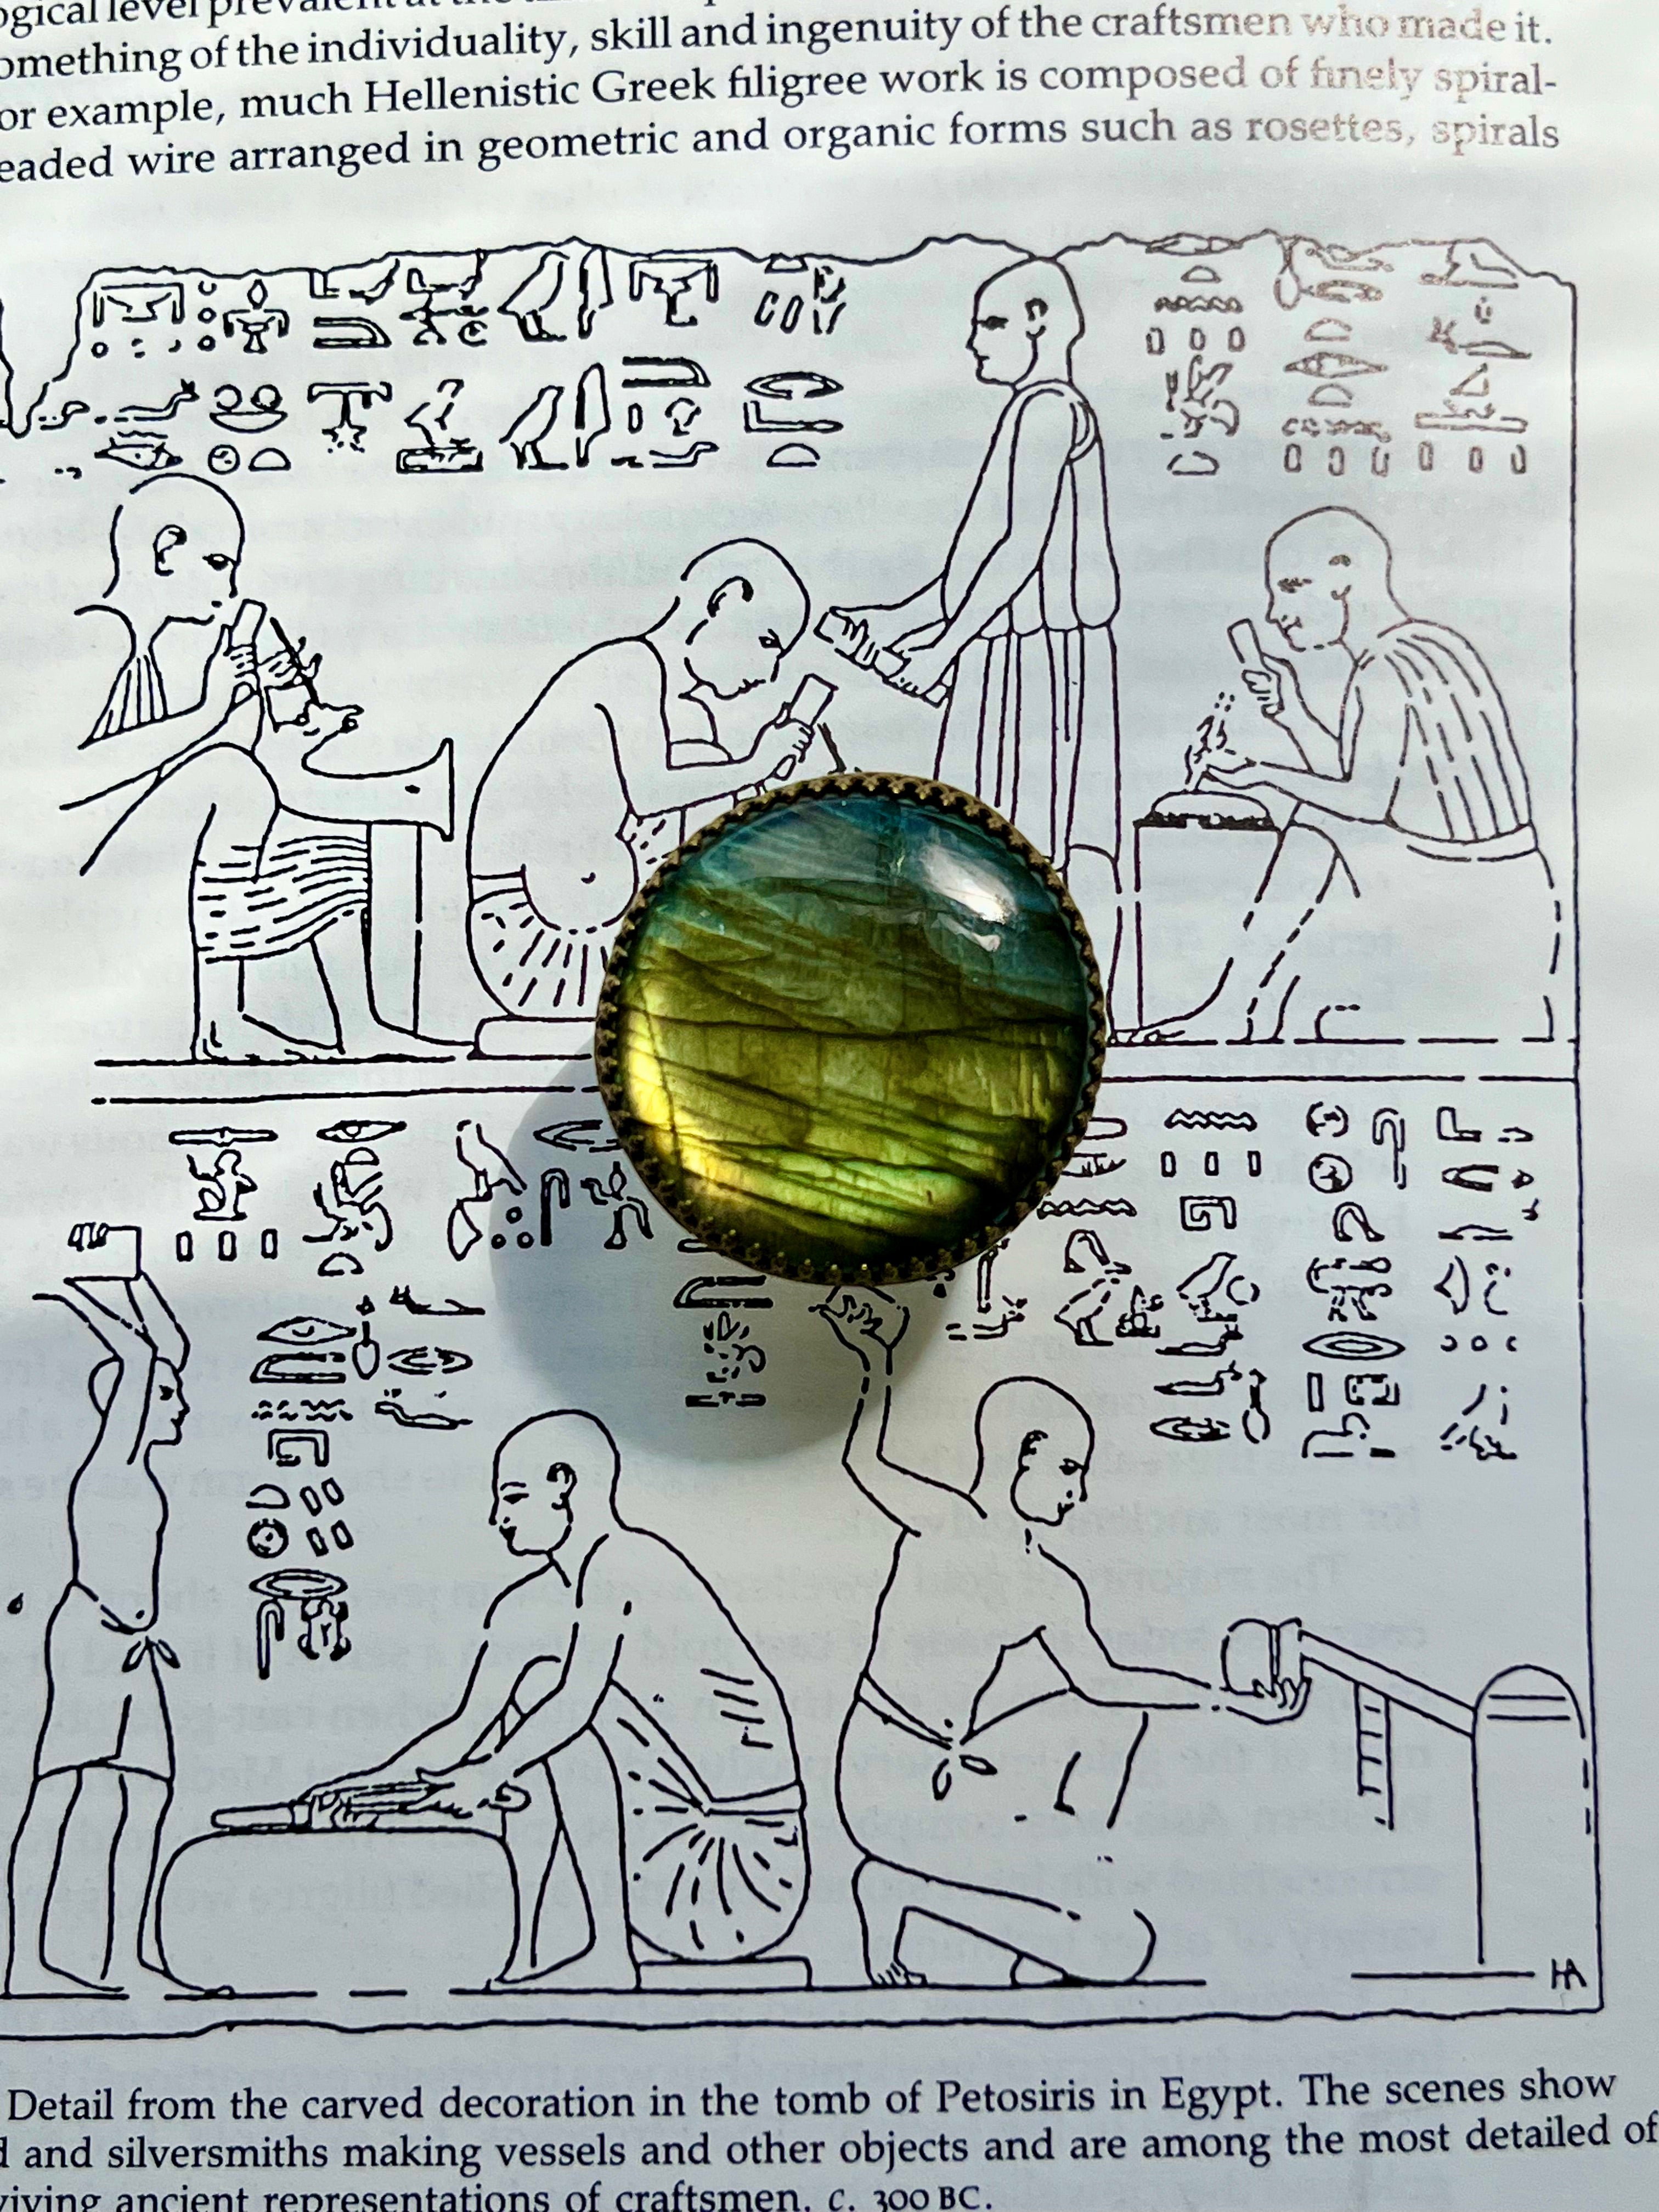 Labradorite Green-Gold Flash Adjustable Ring